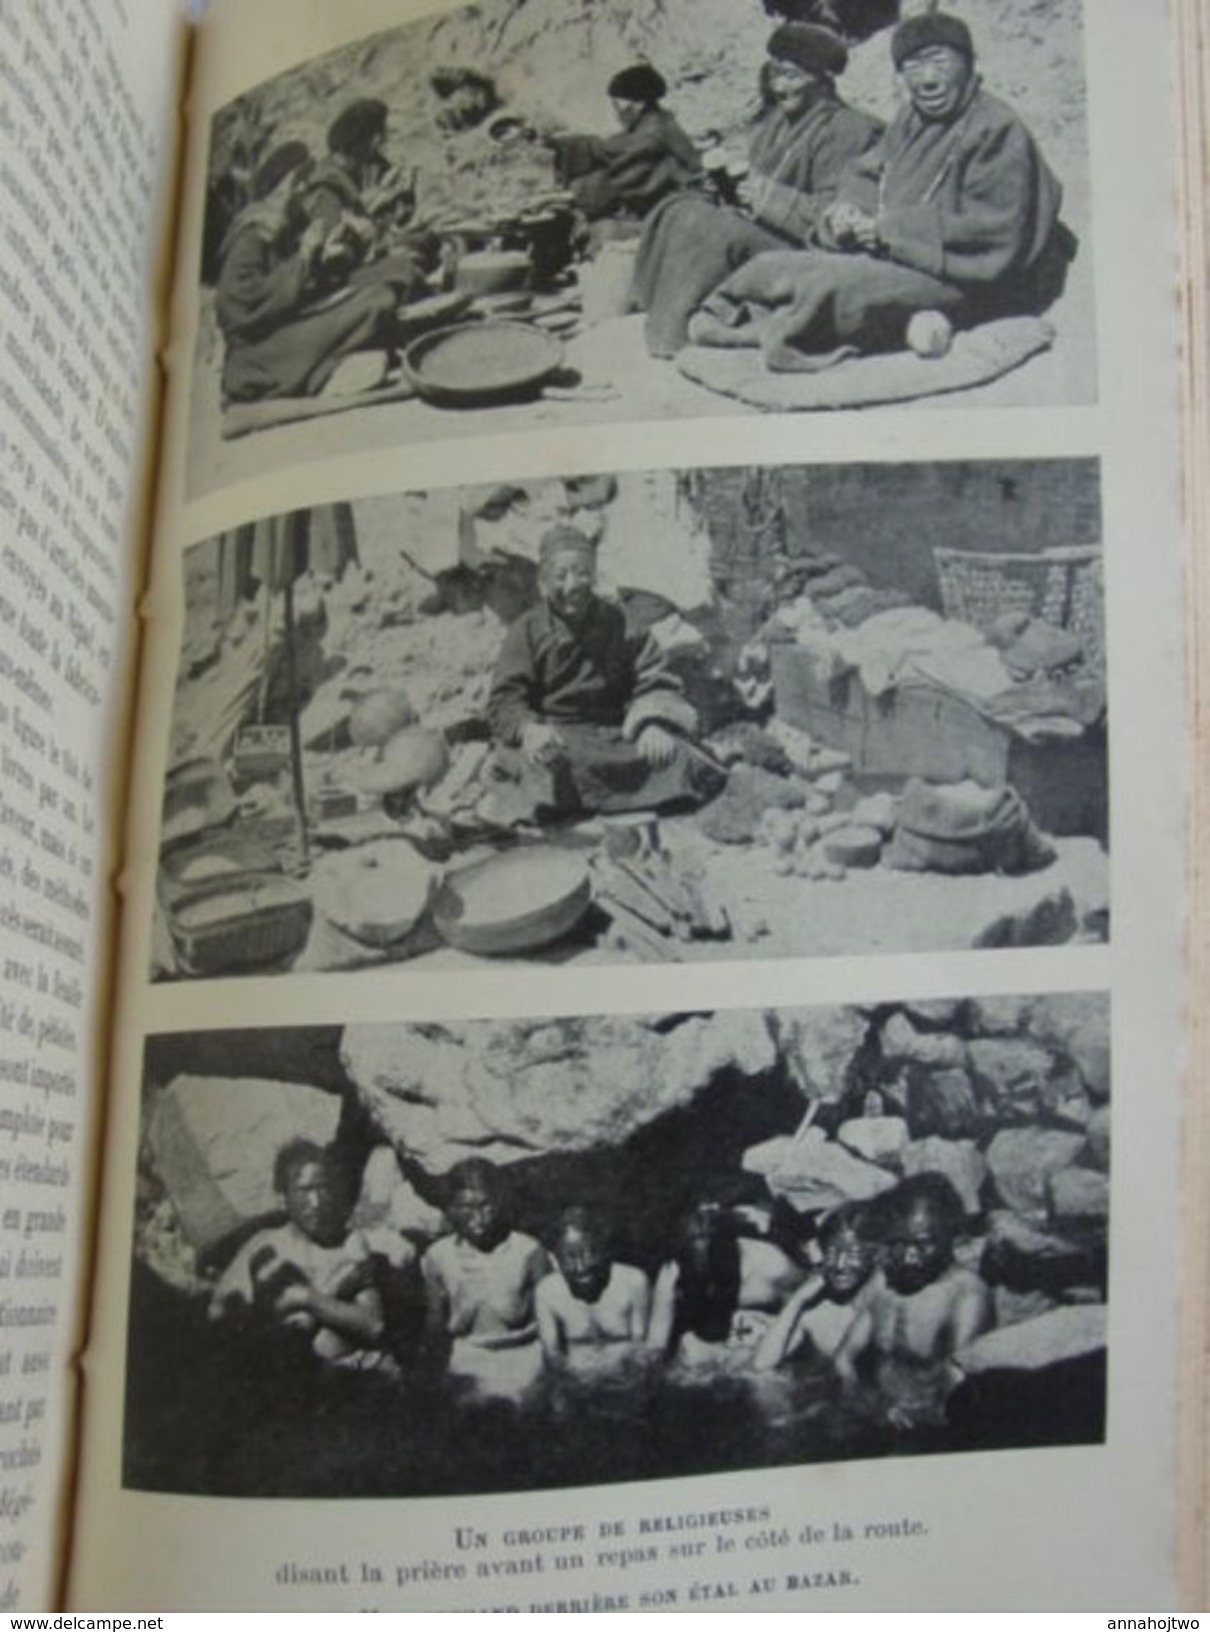 ASIE / TIBET * MOEURS ET COUTUMES des THIBÉTAINS *D.Macdonald-1930 / Dalaï Lama,Lhassa ...